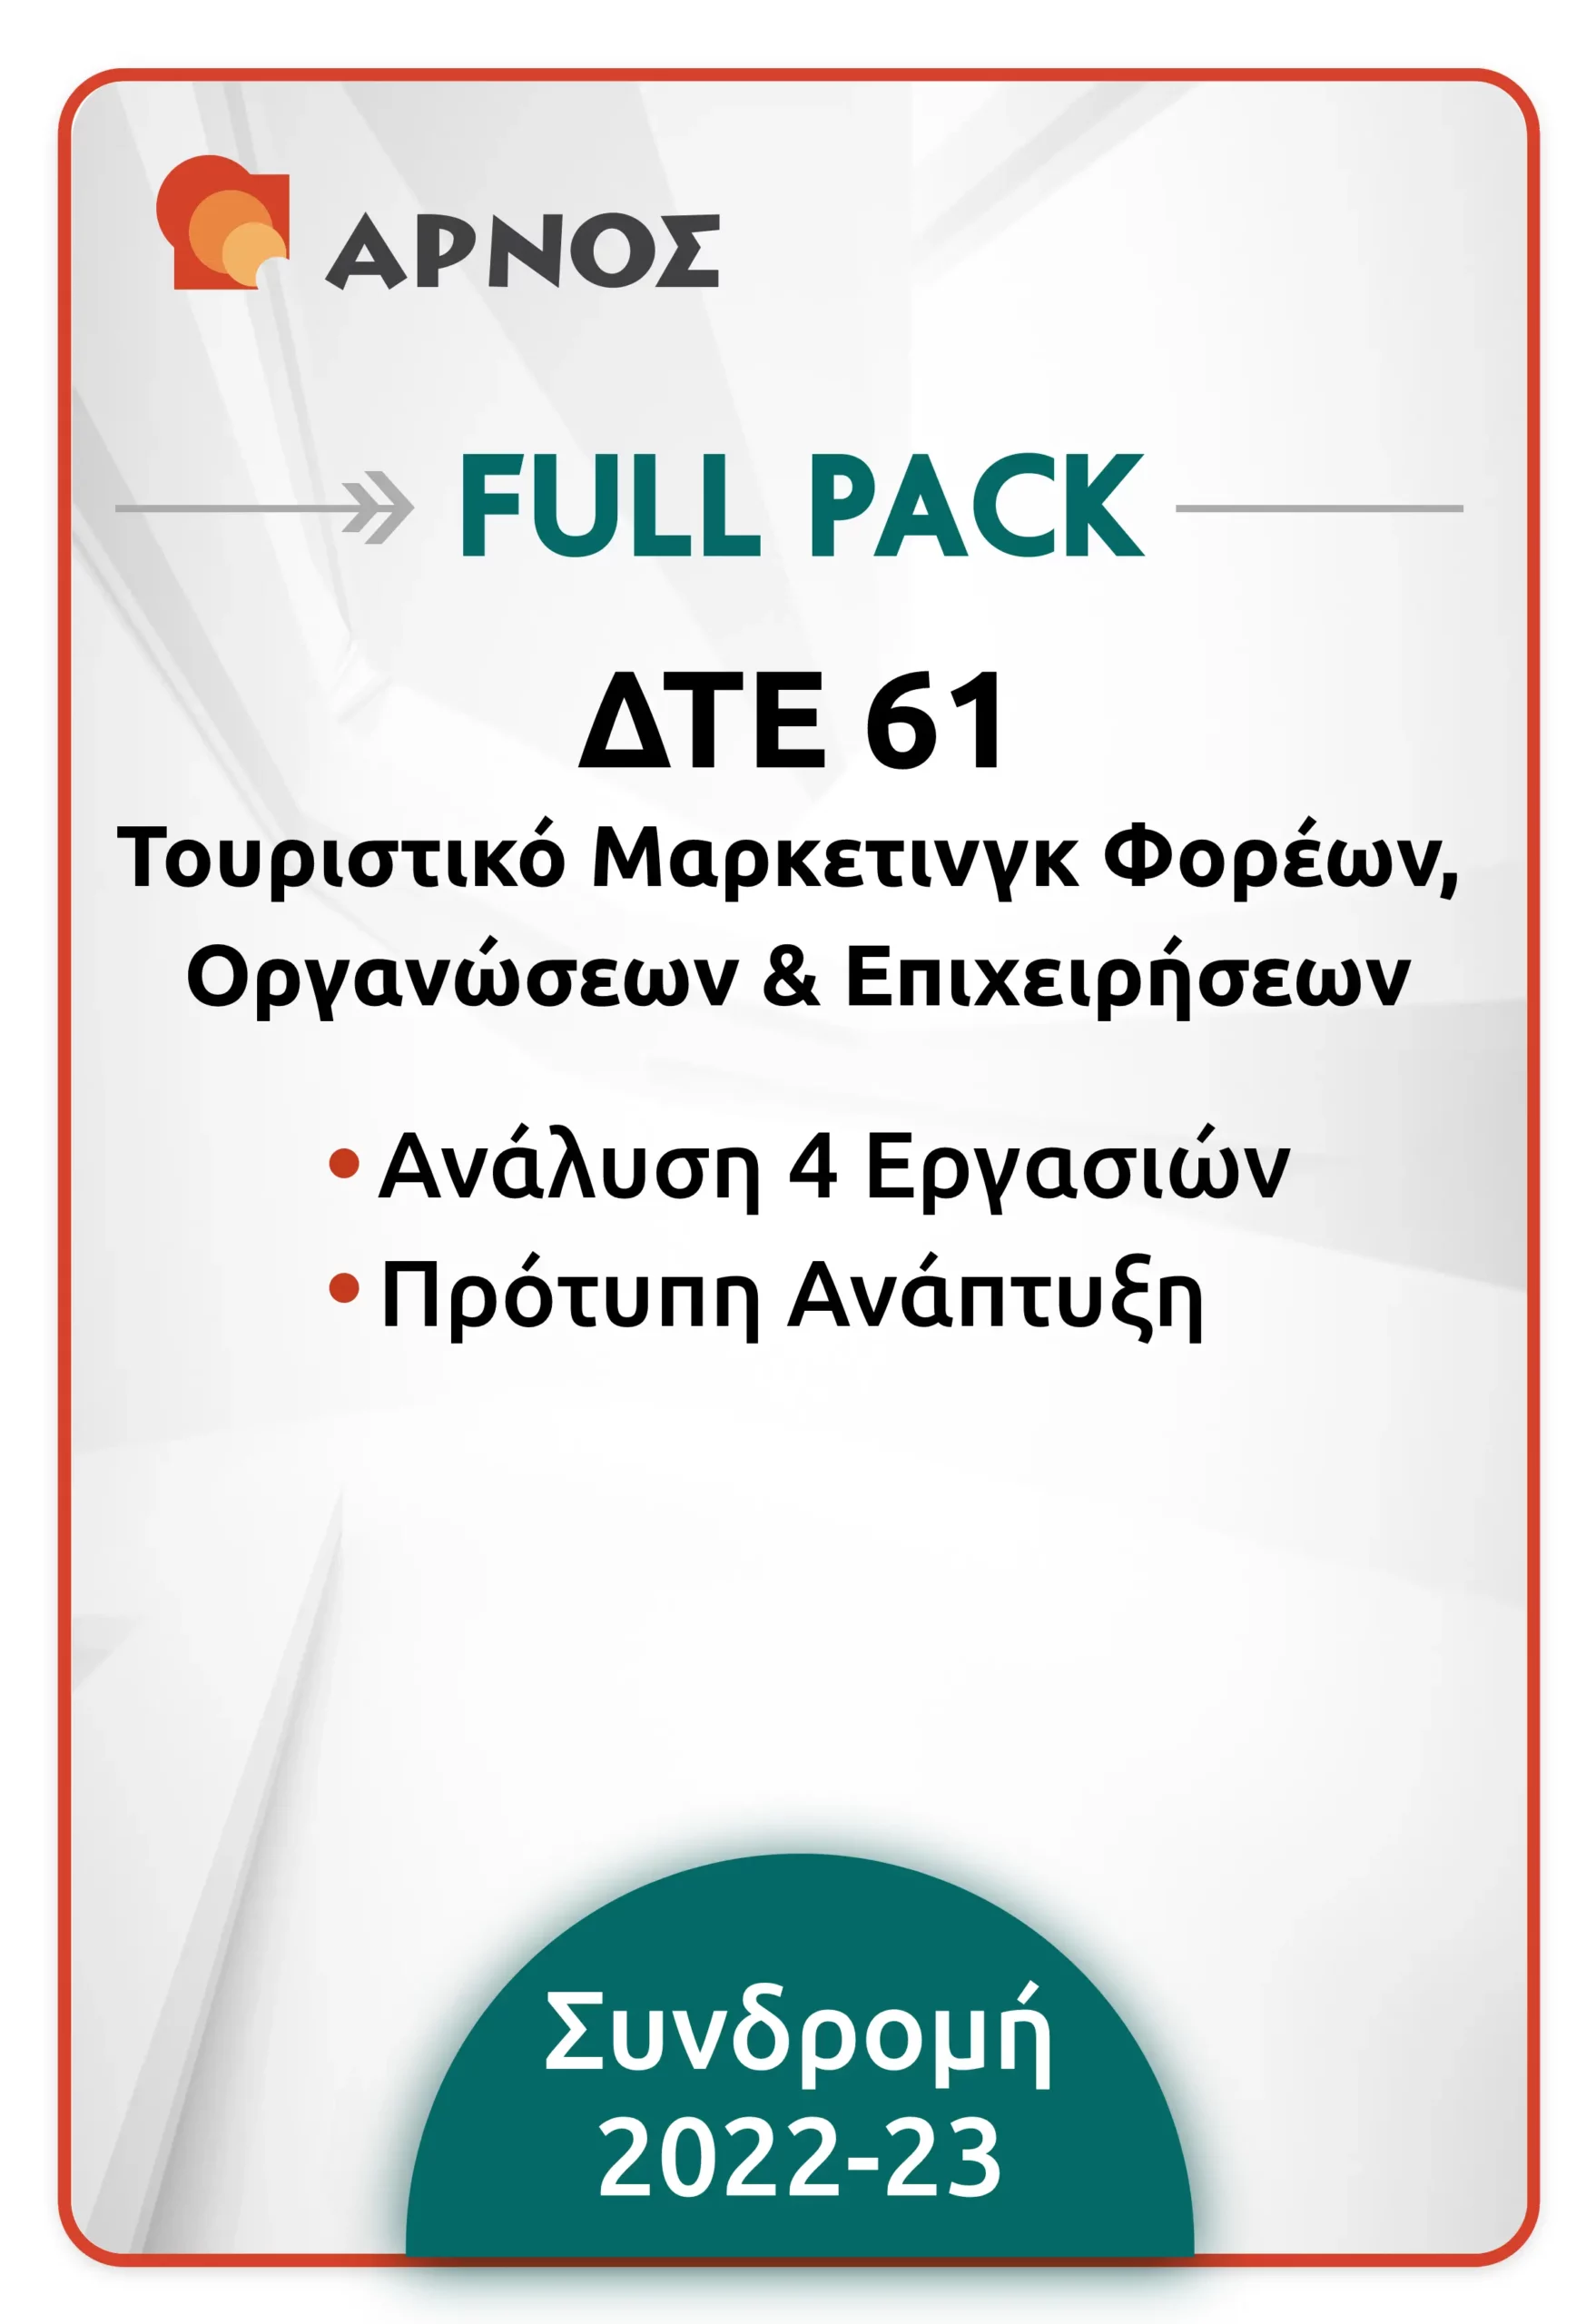 ΔΤΕ 61 - Full Pack